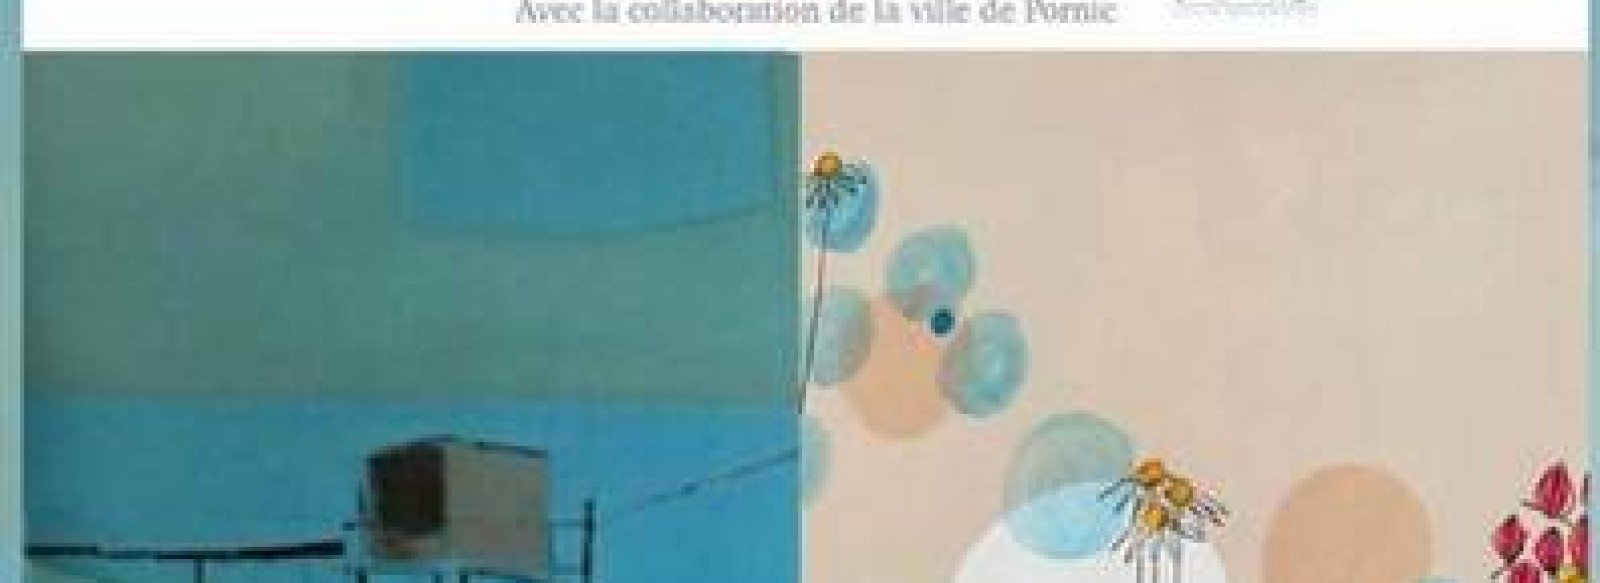 Exposition de Mallory Chauveau et Marianne Abougit